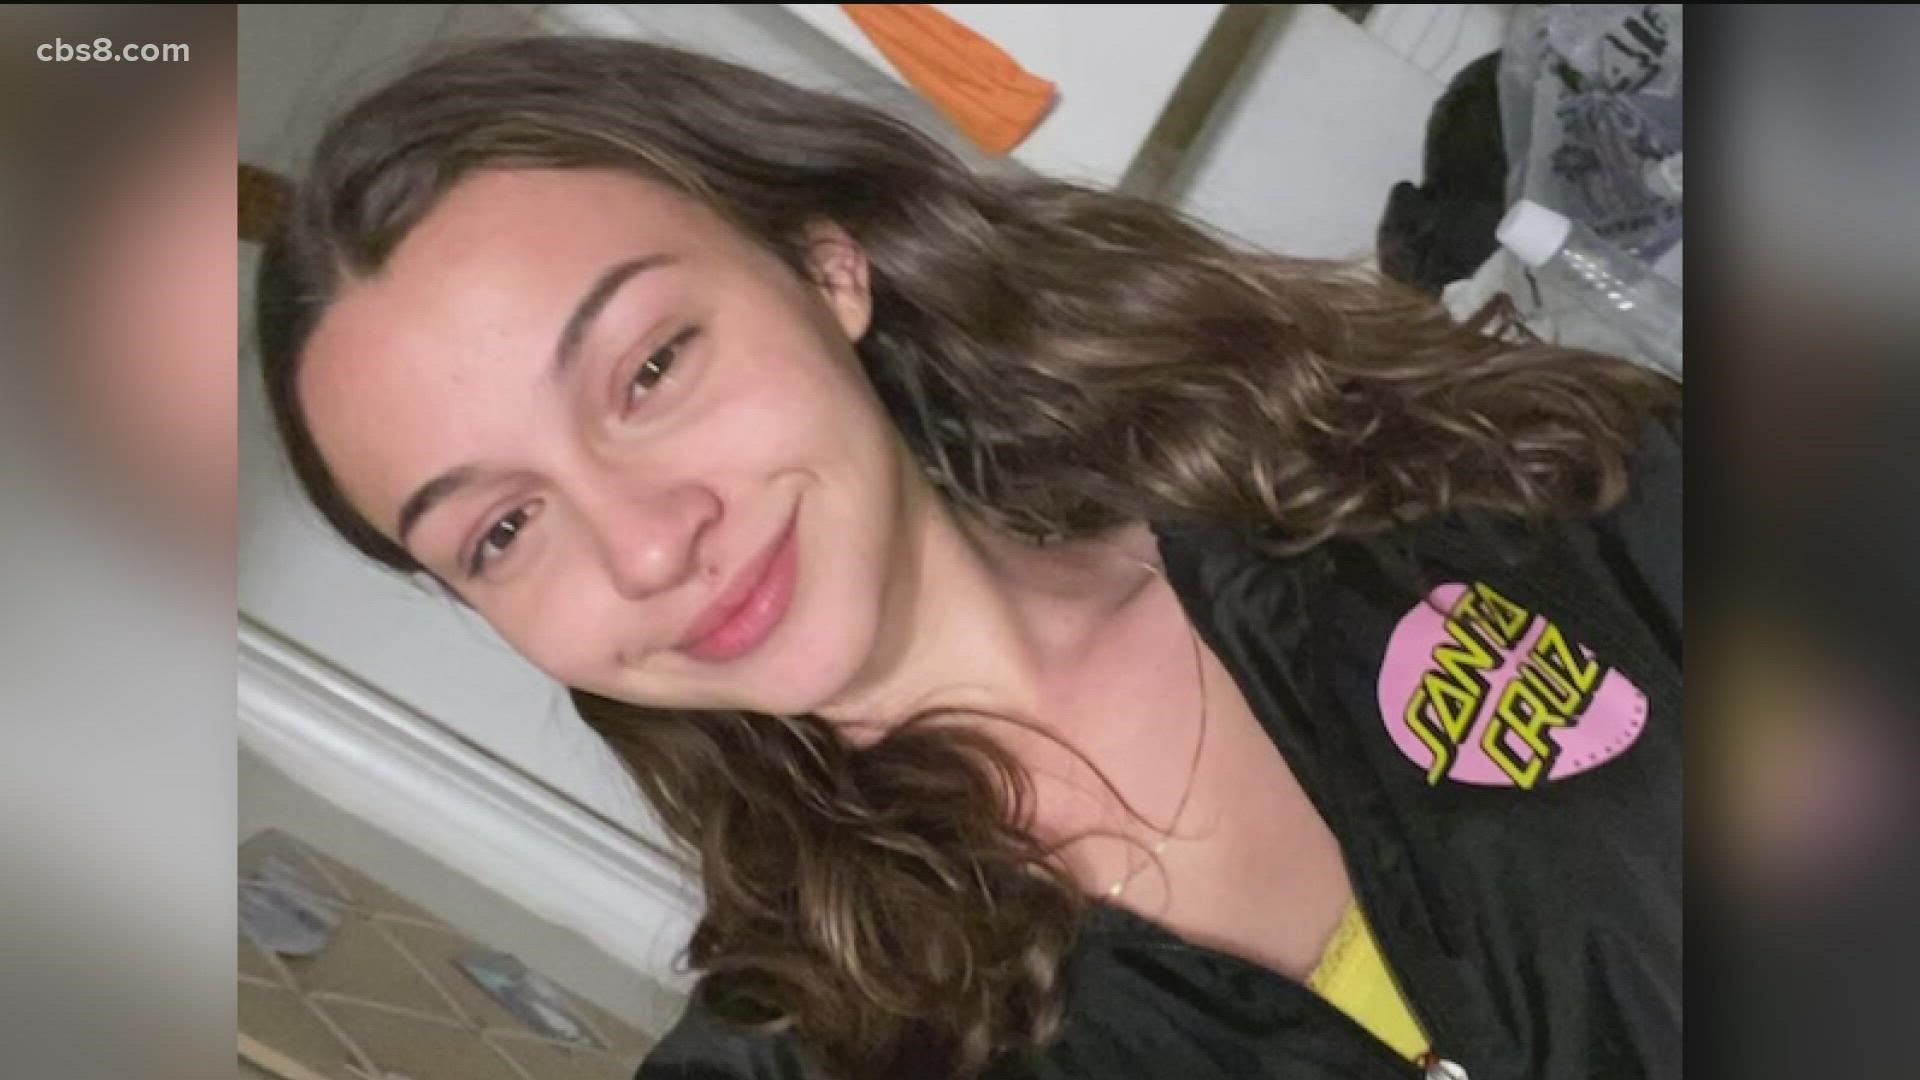 Janessa Del Valle, 19, was shot during 2020 street brawl.